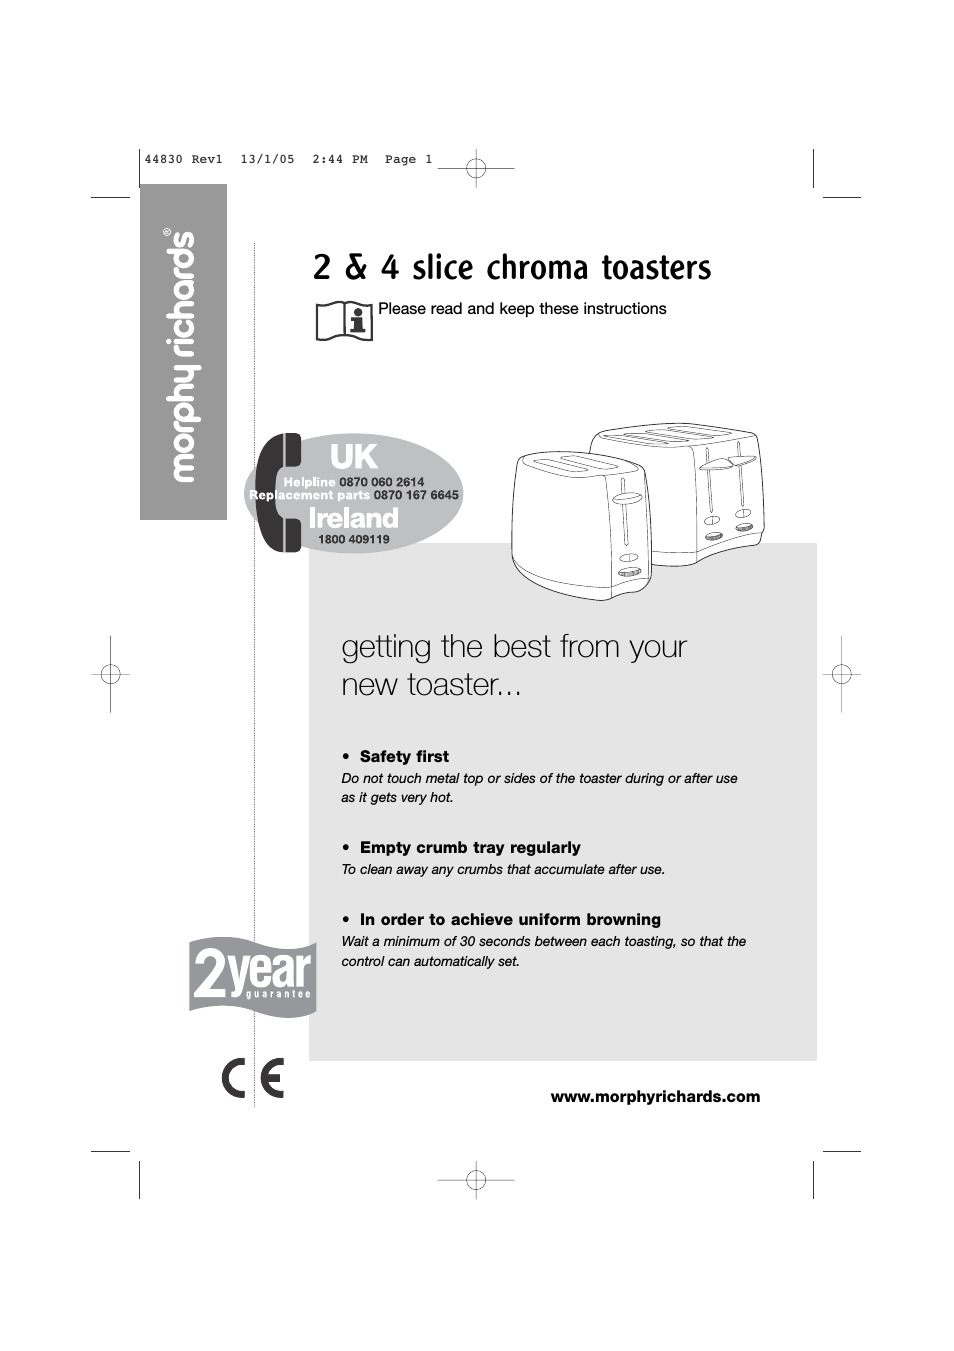 2 & 4 slice chroma toasters